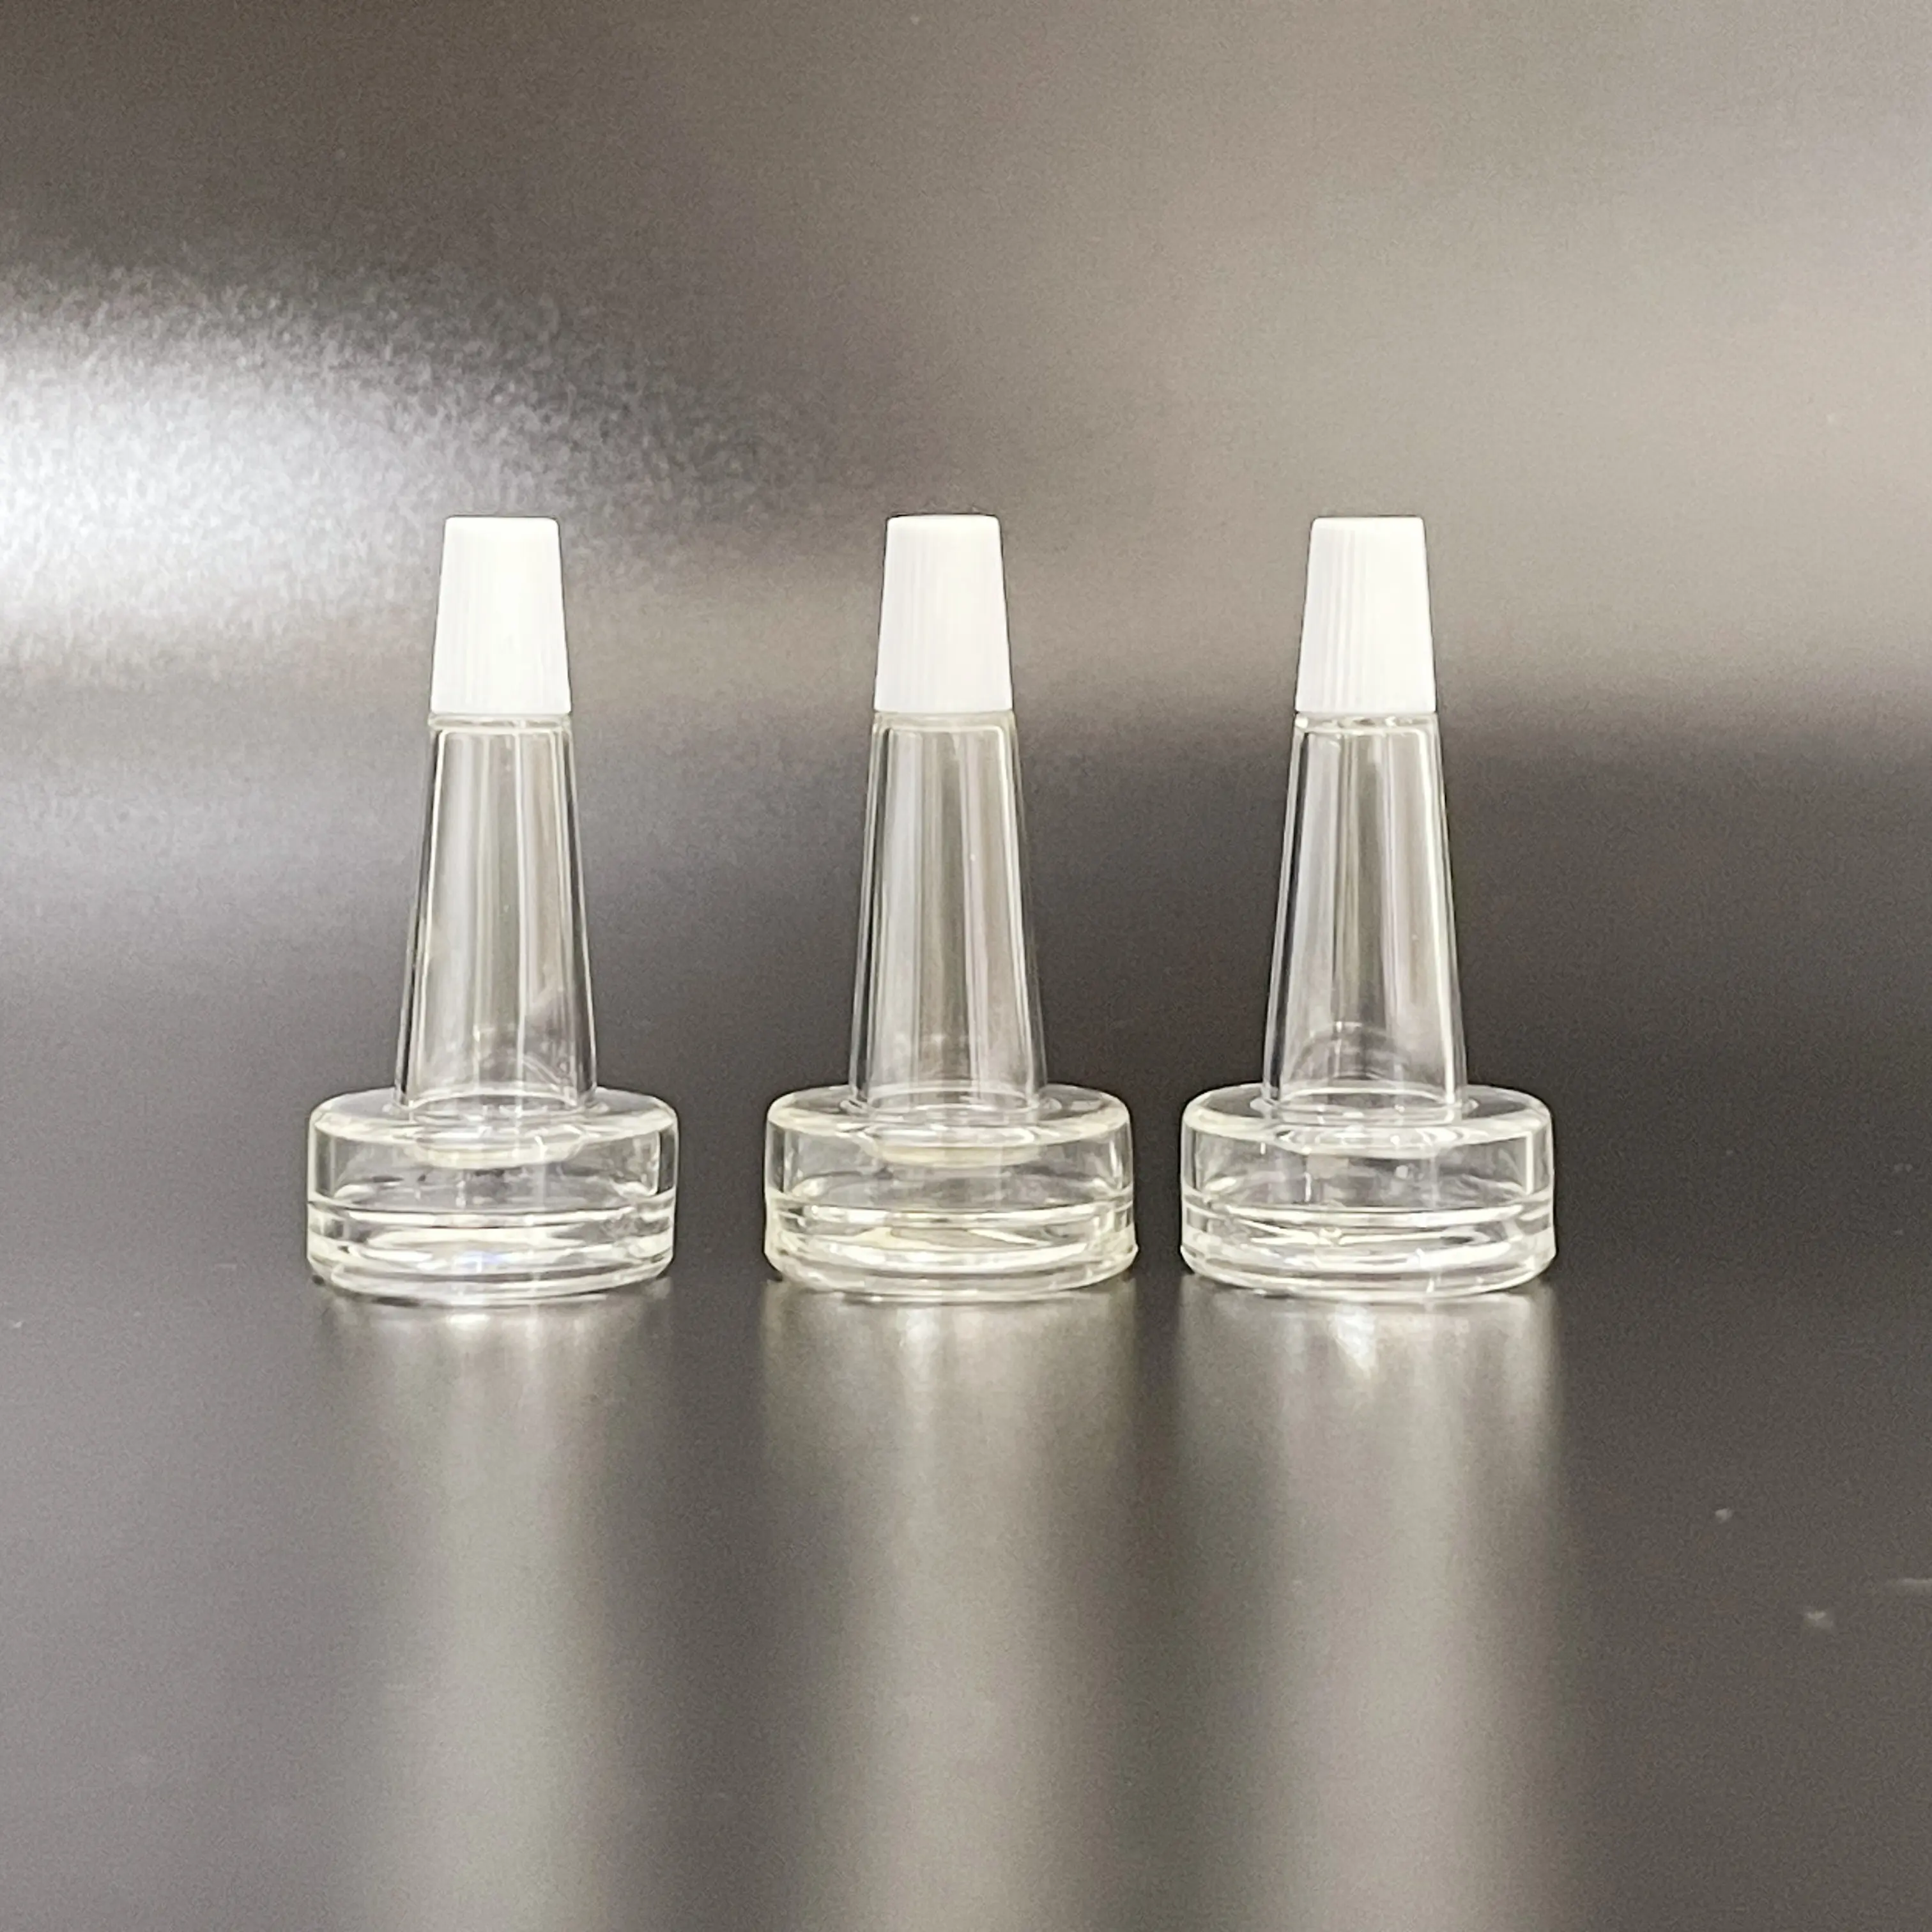 Penisilin cam kıvrım üst flakon için yüksek kalite 20mm PVC plastik yumuşak damlalık kabı